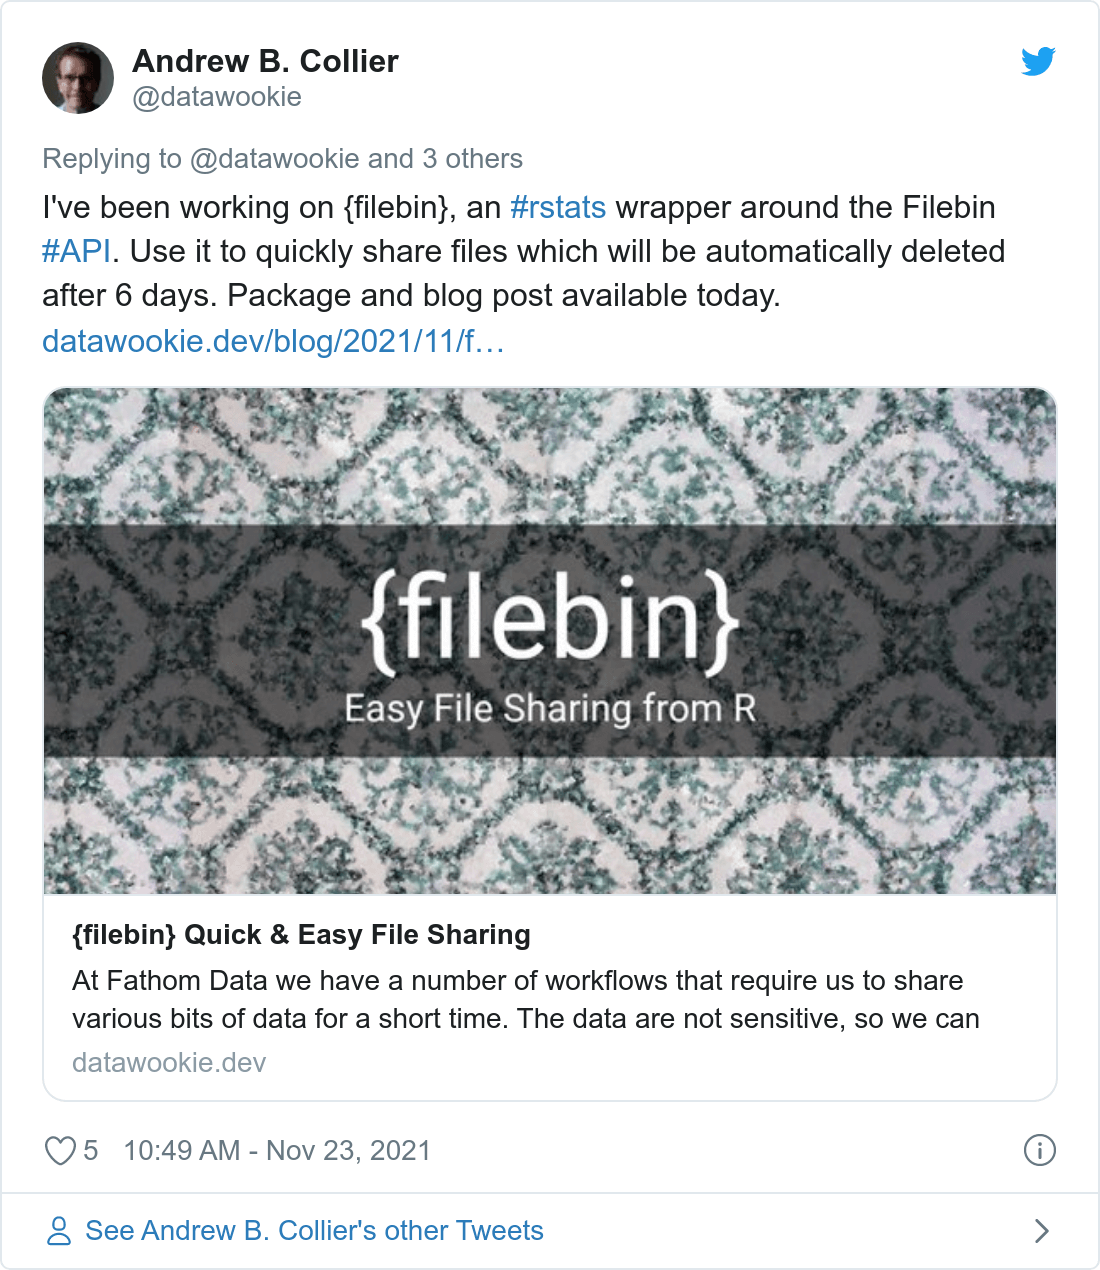 Tweet about {filebin}